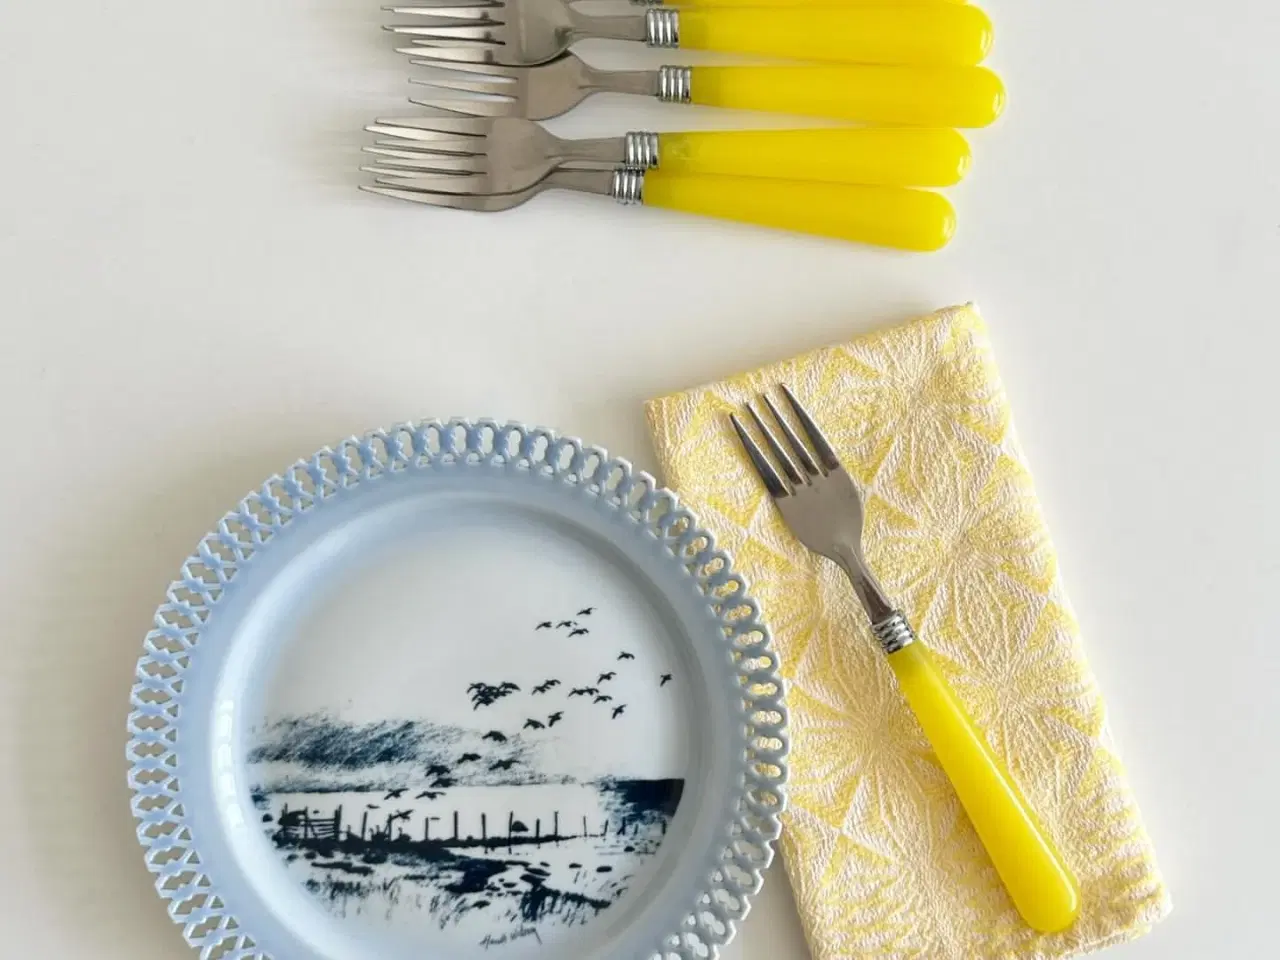 Billede 1 - Retro gafler, stål og gul plast, 6 stk samlet